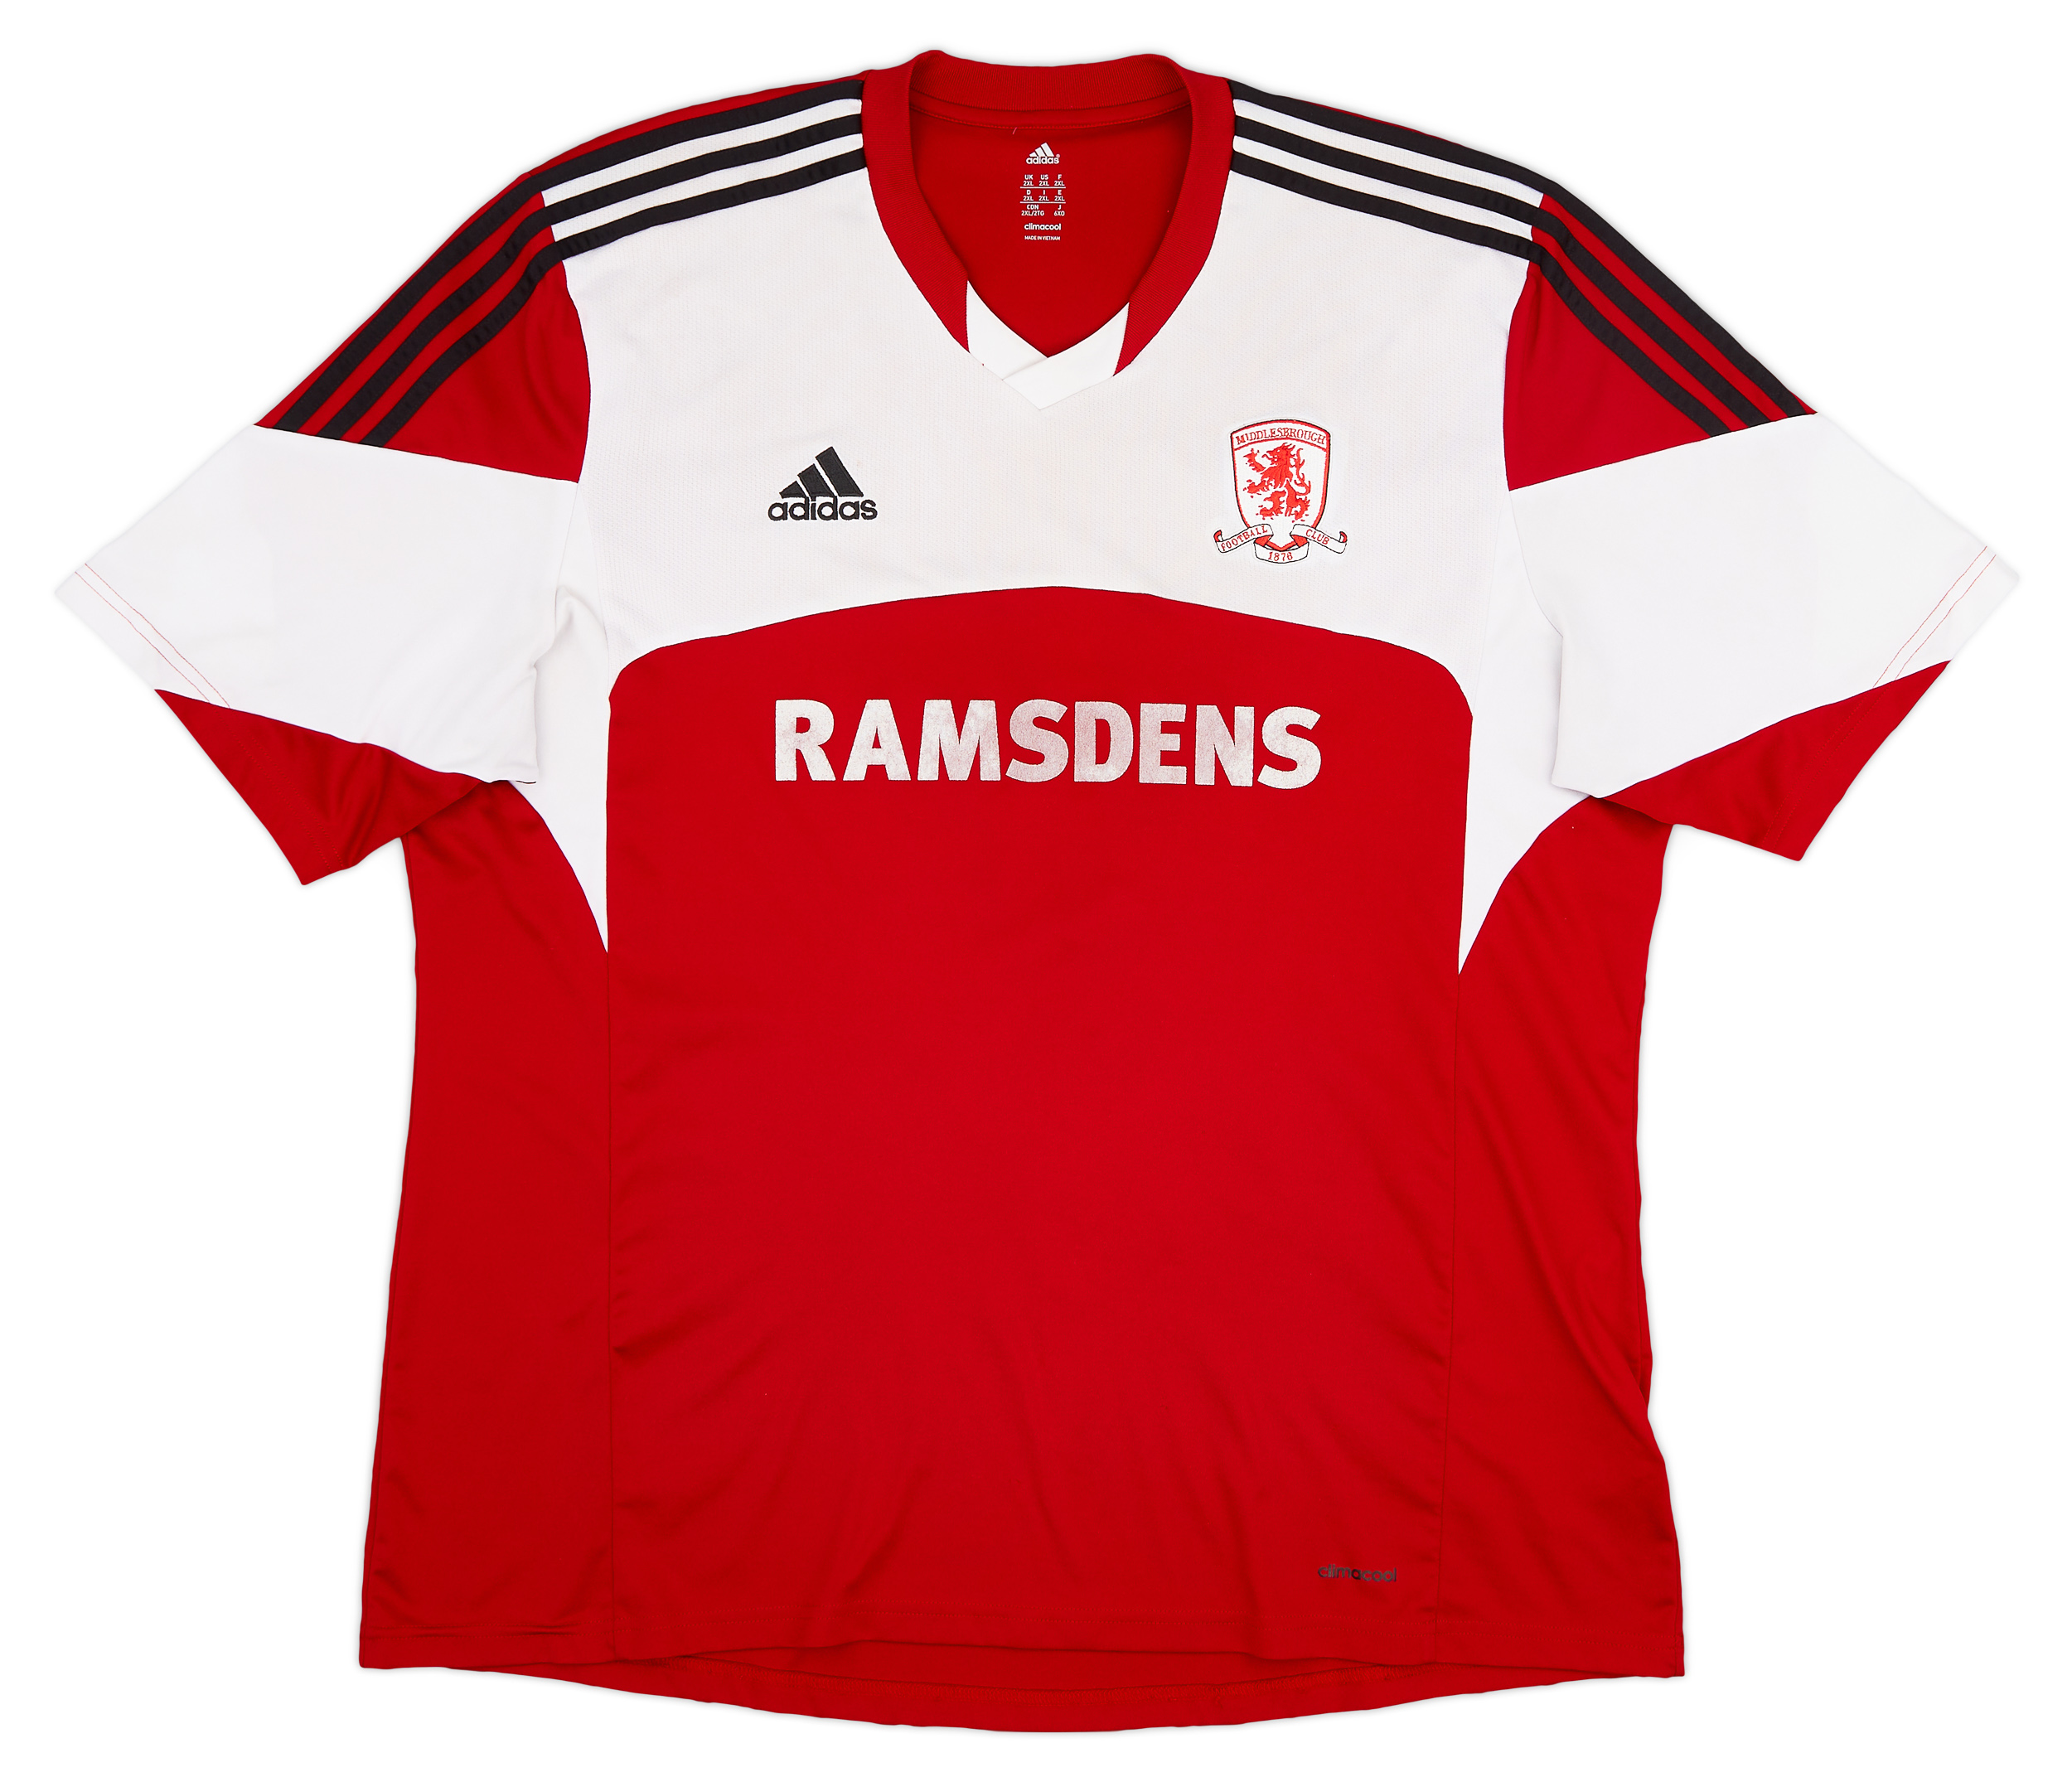 2013-14 Middlesbrough Home Shirt - Good 5/10 - ()